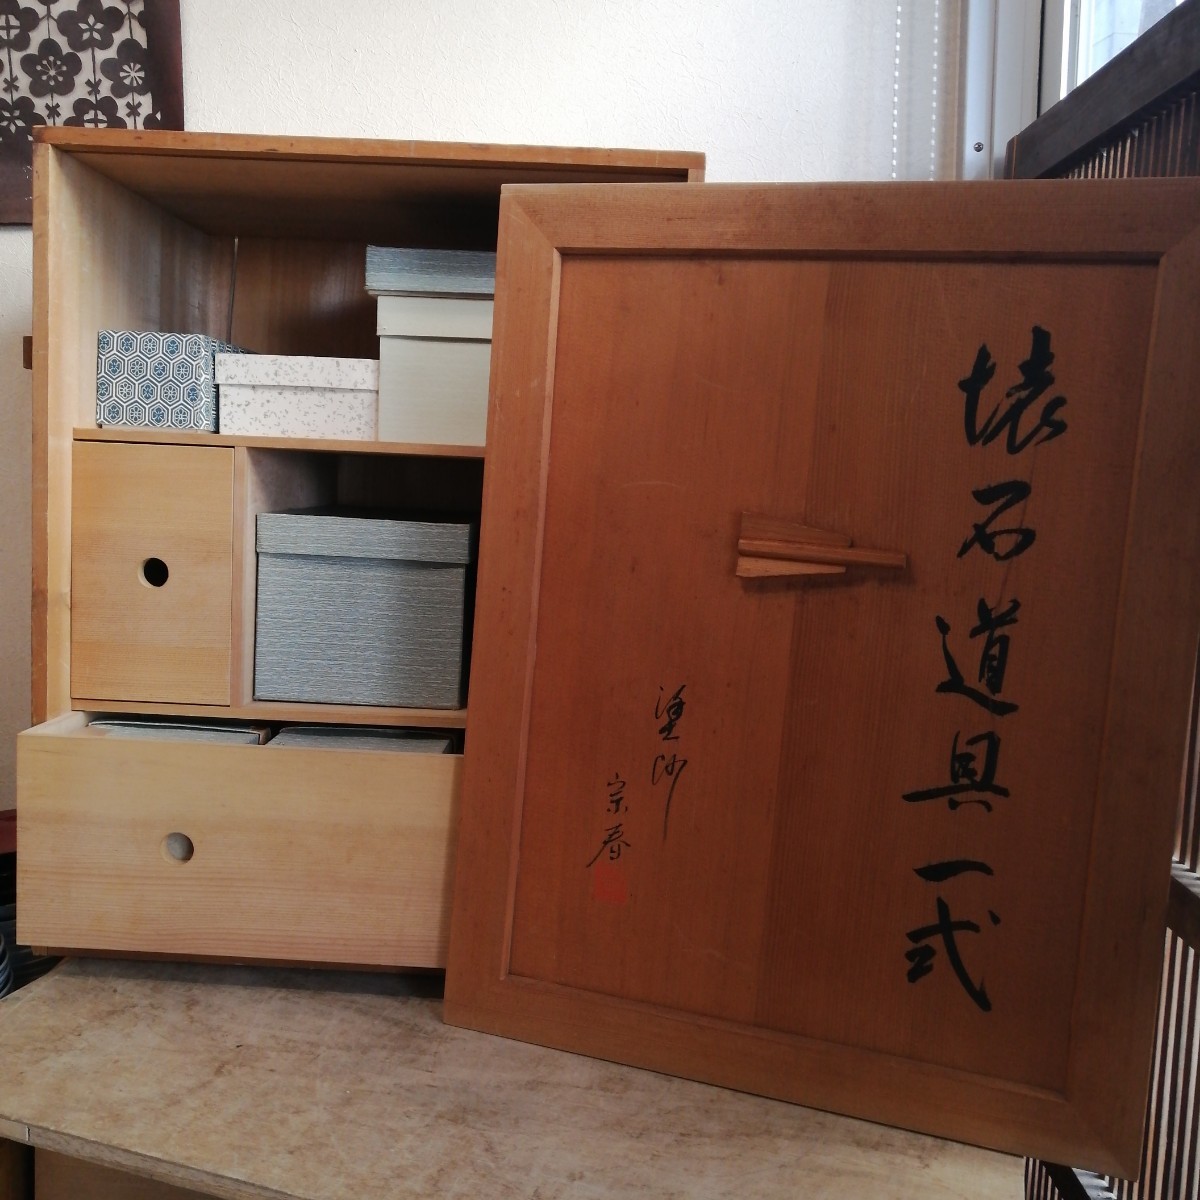 懐石道具一式 宗春 茶道具 漆器 木製 漆 懐石料理 木箱の画像1